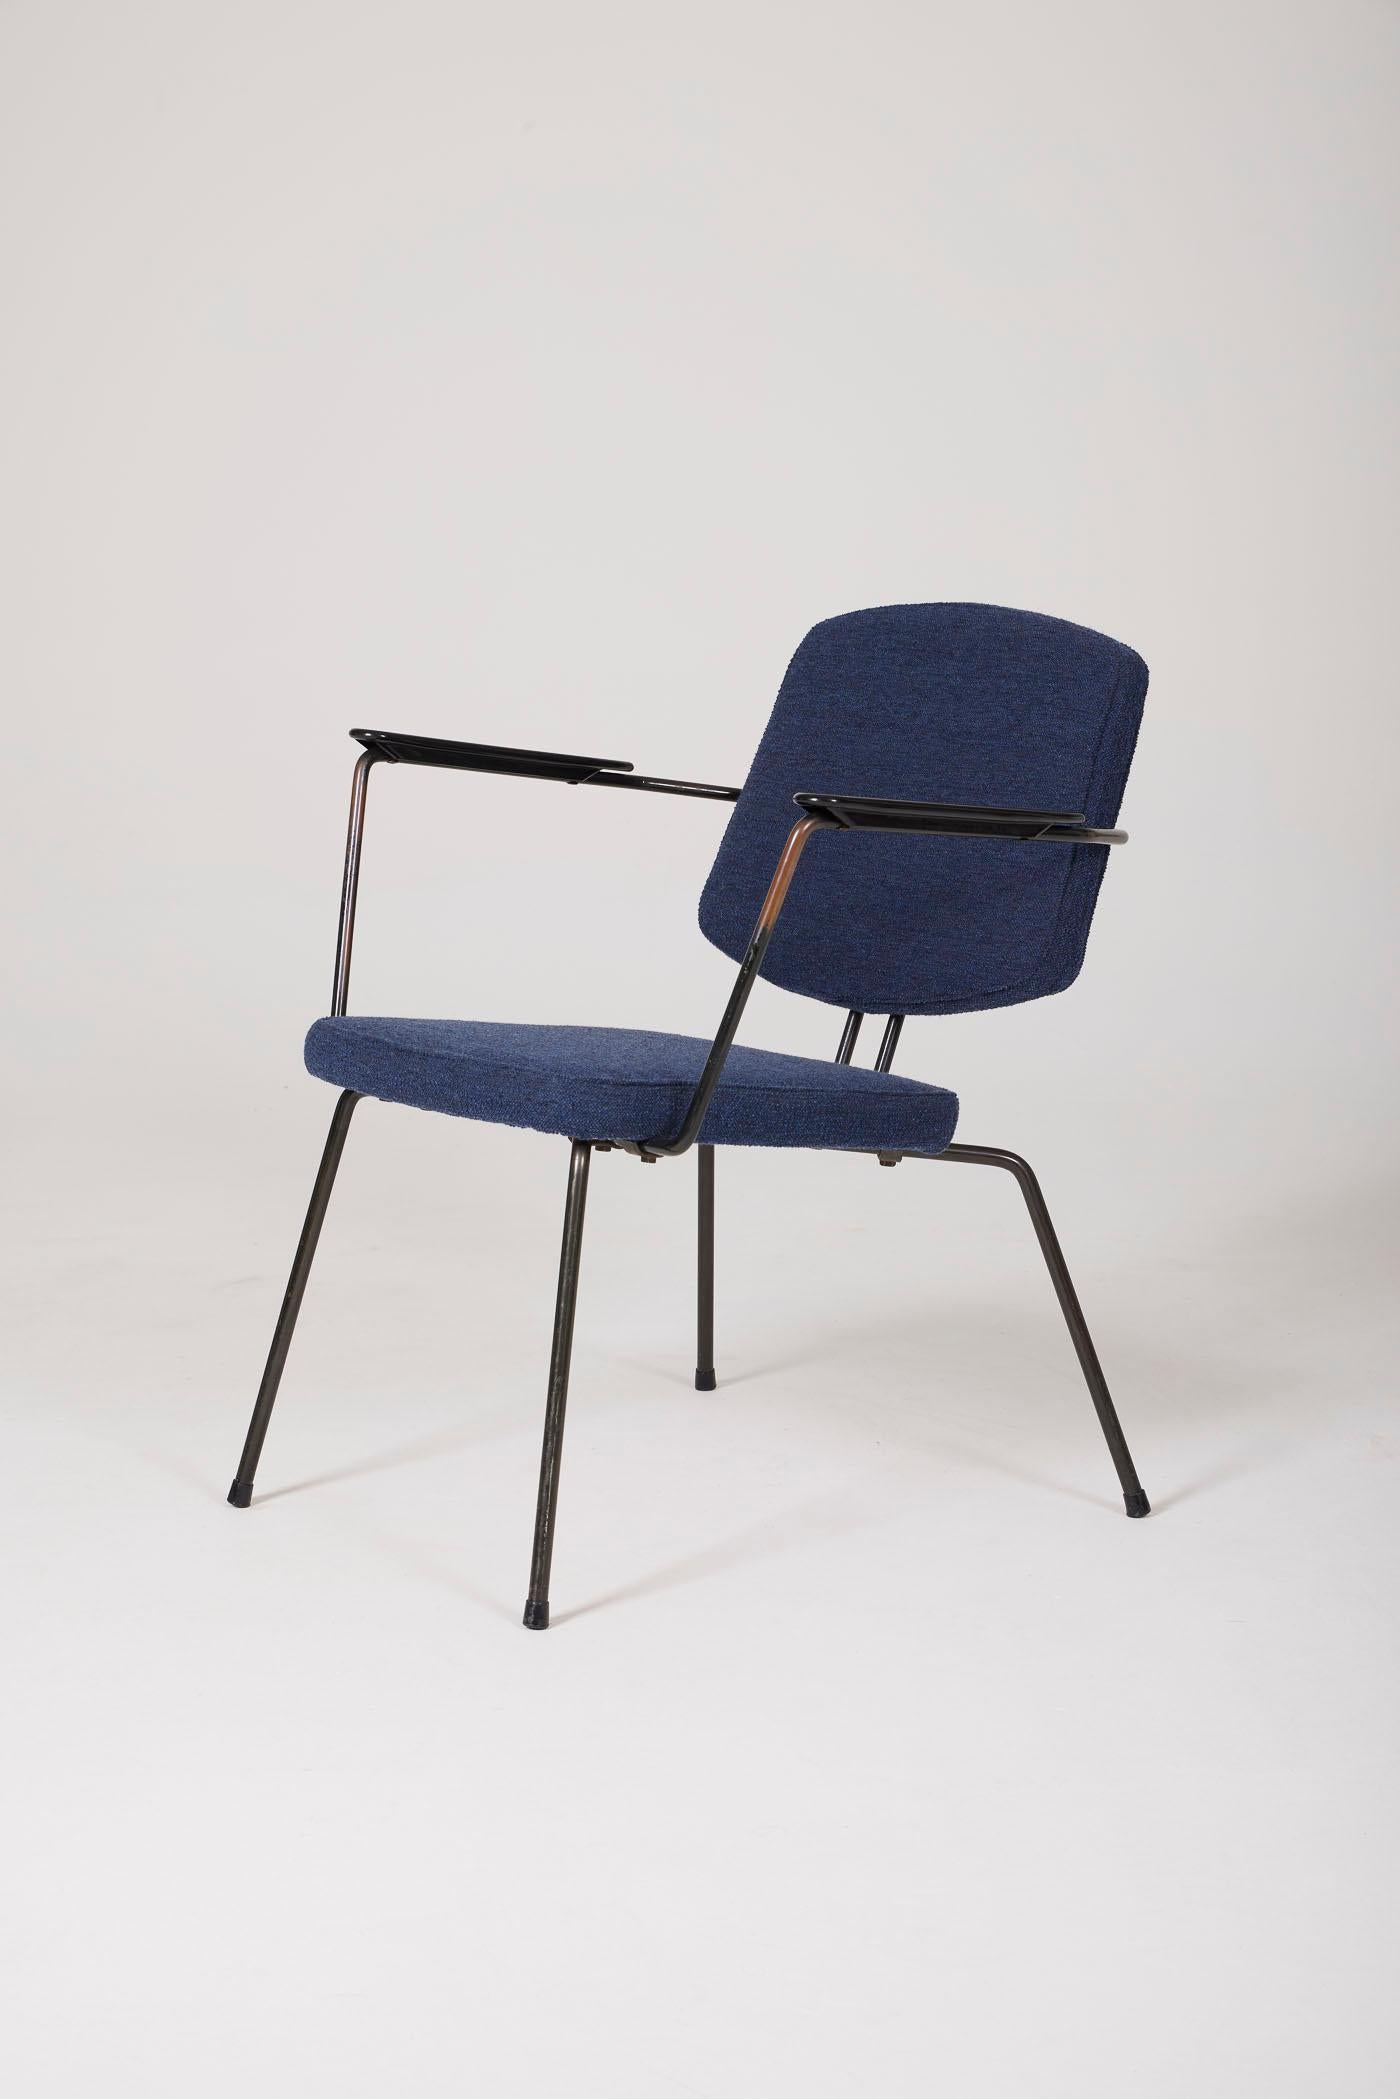  Sessel des niederländischen Designers Rudolf Wolf für Elsrijk, 1950er Jahre. Dieser Sessel wurde mit blauem Wollstoff neu gepolstert. Die Armlehnen sind aus Bakelit gefertigt. Die röhrenförmige Struktur ist aus schwarz lackiertem Metall. Zwei